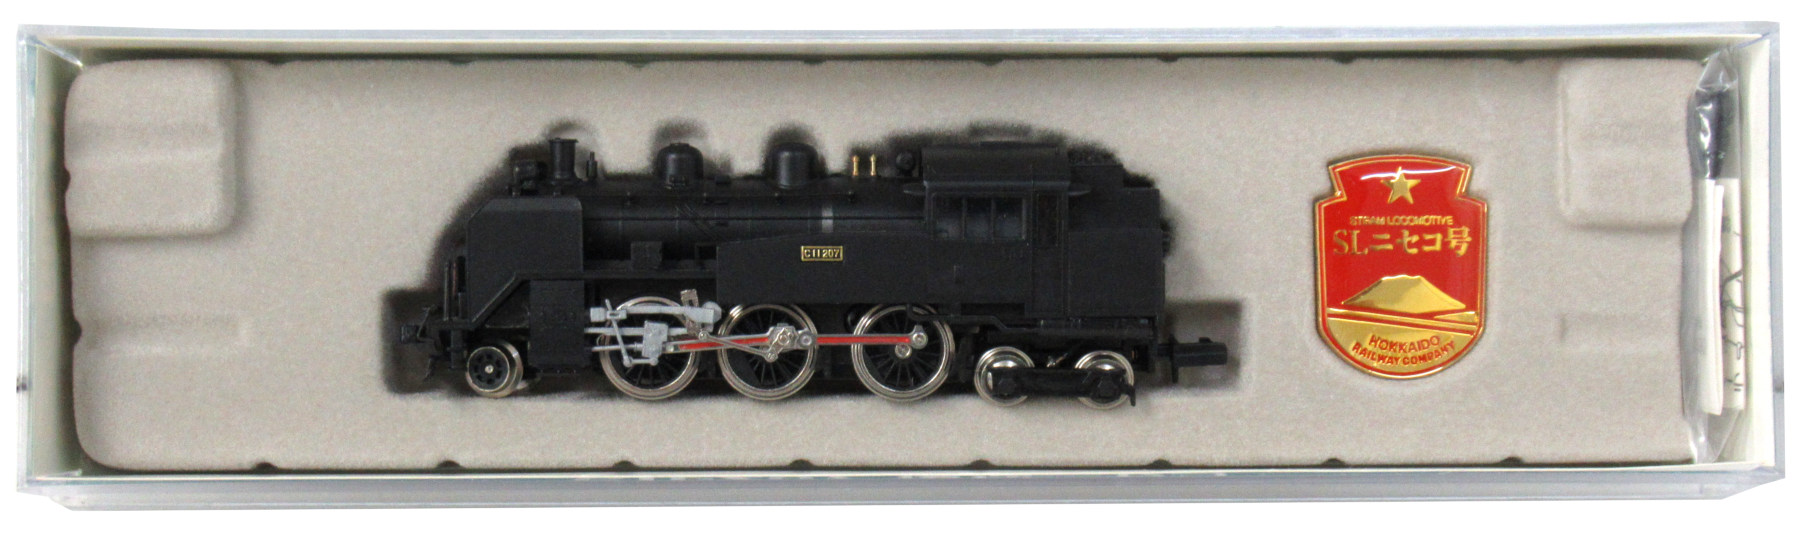 公式]鉄道模型(JR・国鉄 形式別(N)、蒸気機関車、その他)カテゴリ 